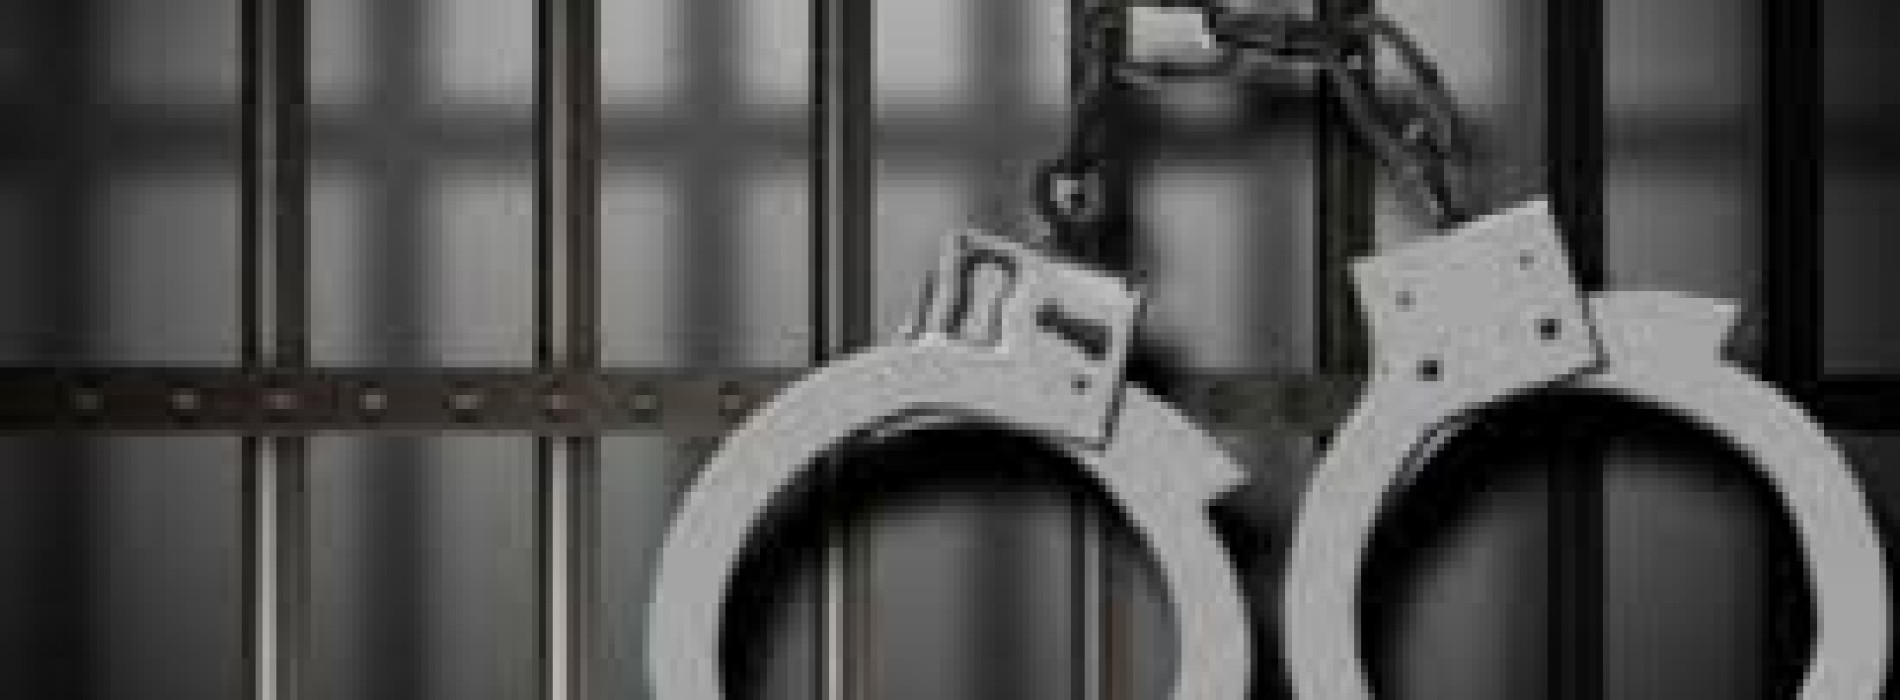 В Таразе полицейский осужден на 6 лет за подброс наркотиков и взятку